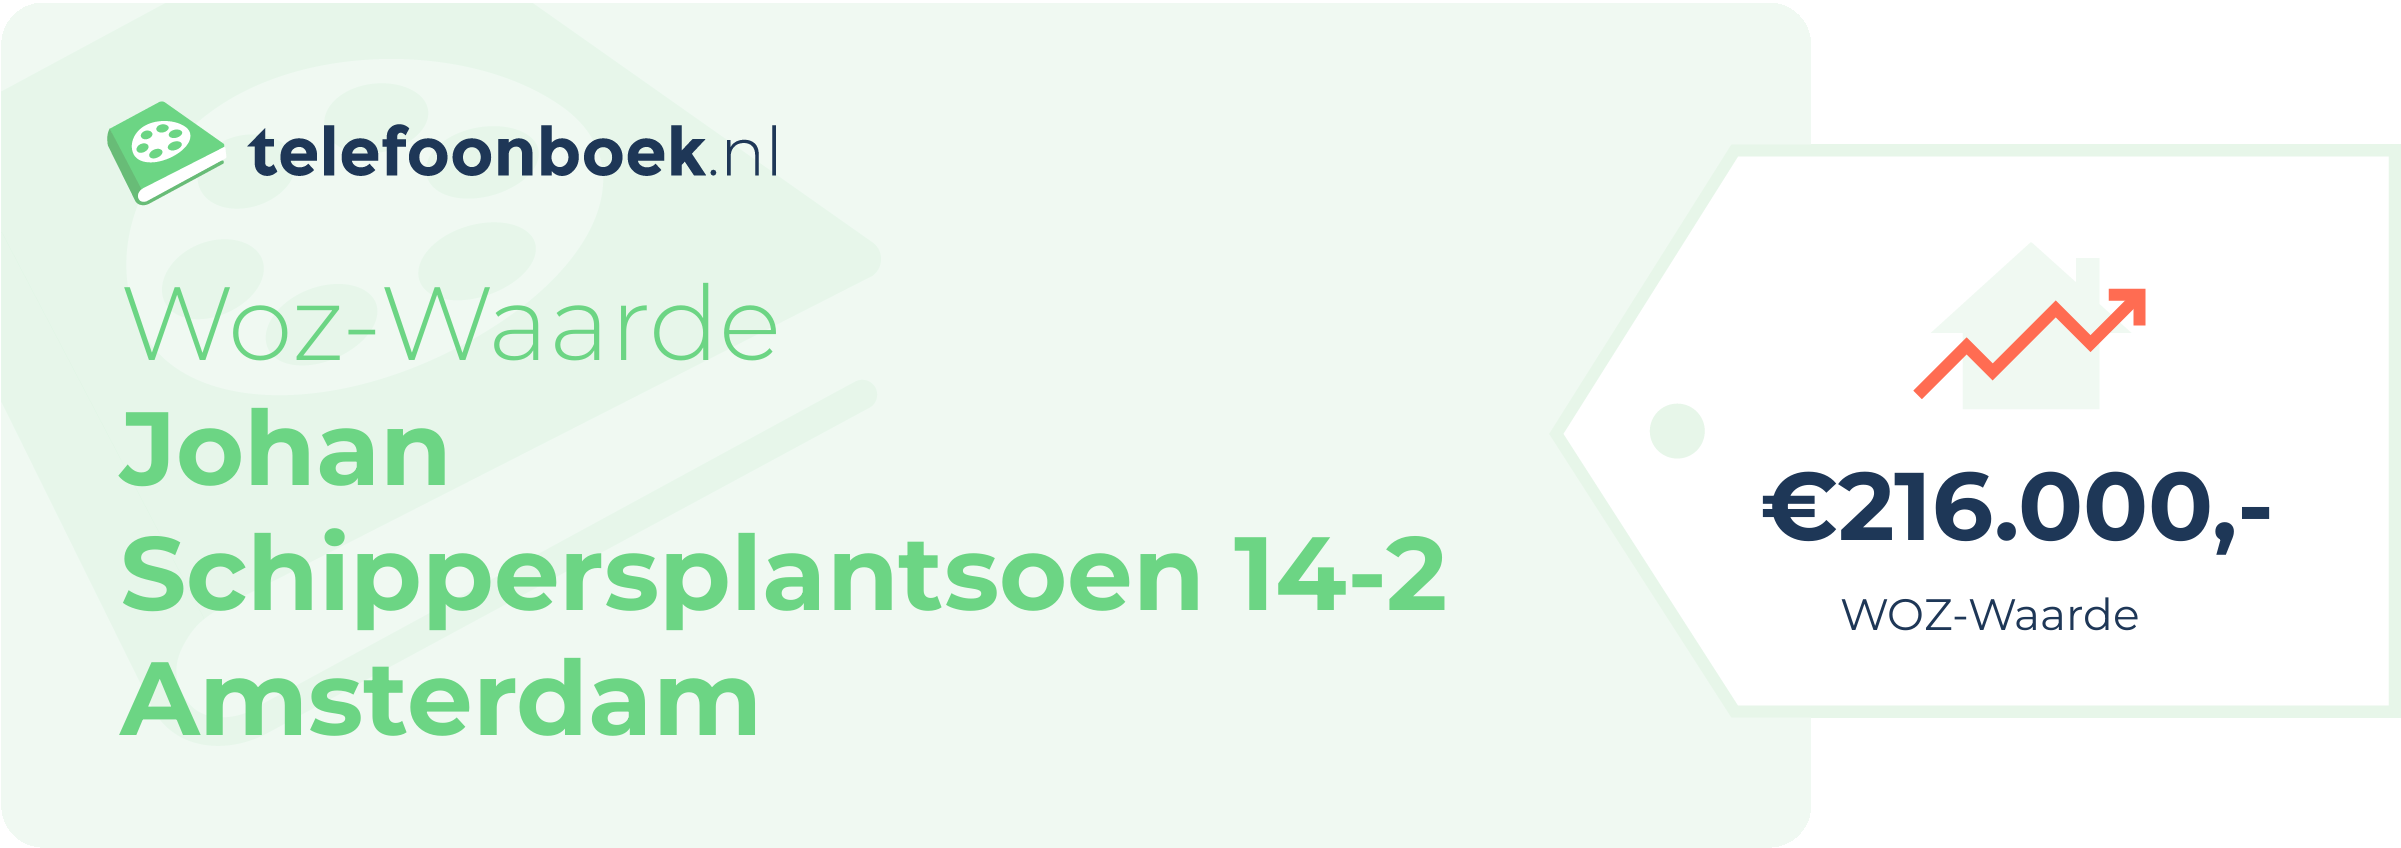 WOZ-waarde Johan Schippersplantsoen 14-2 Amsterdam